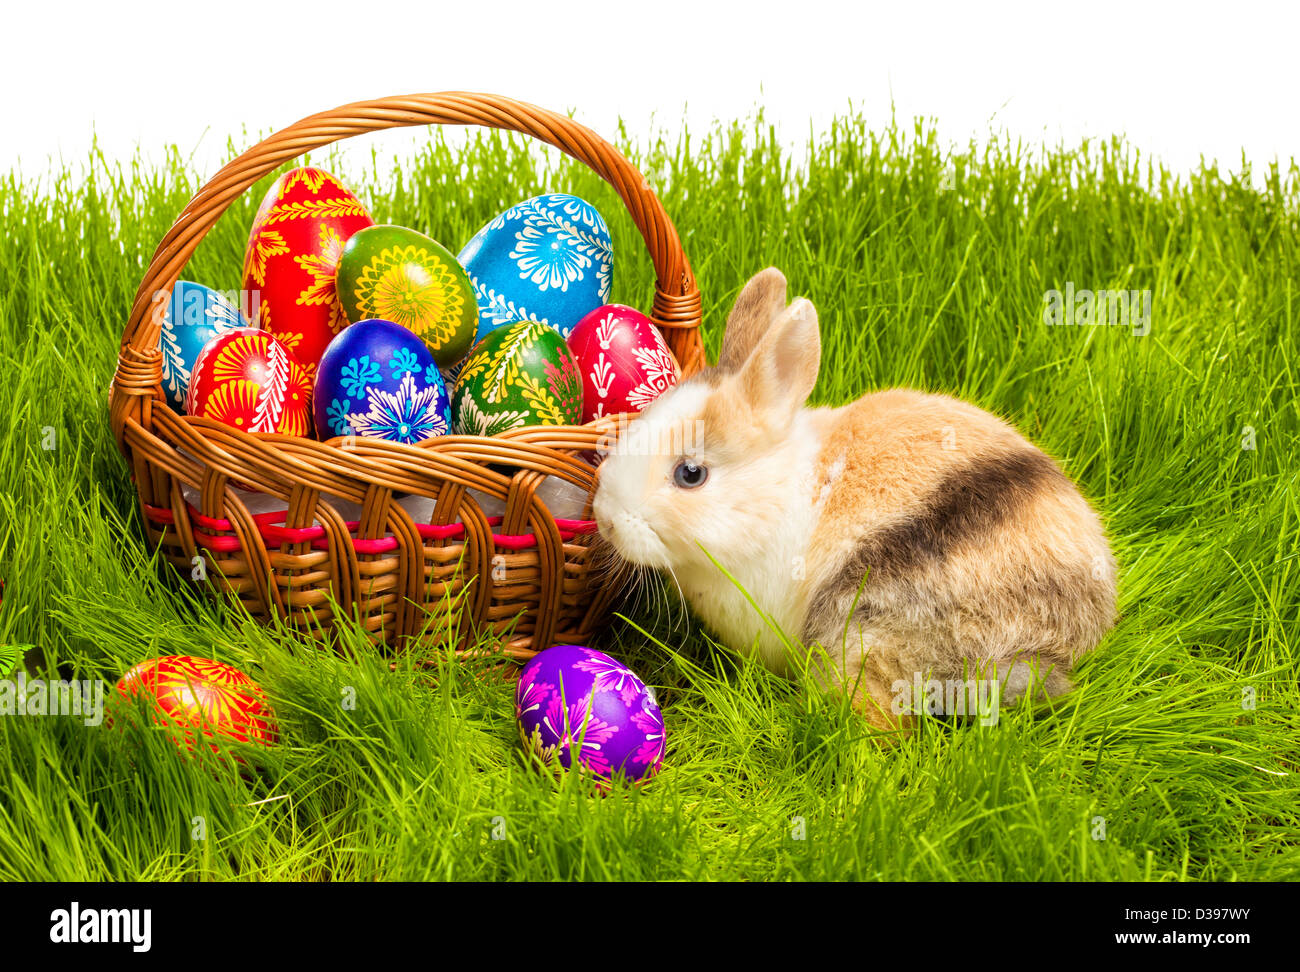 Cesto di pasqua con uovo e baby bunny sull'erba Foto Stock